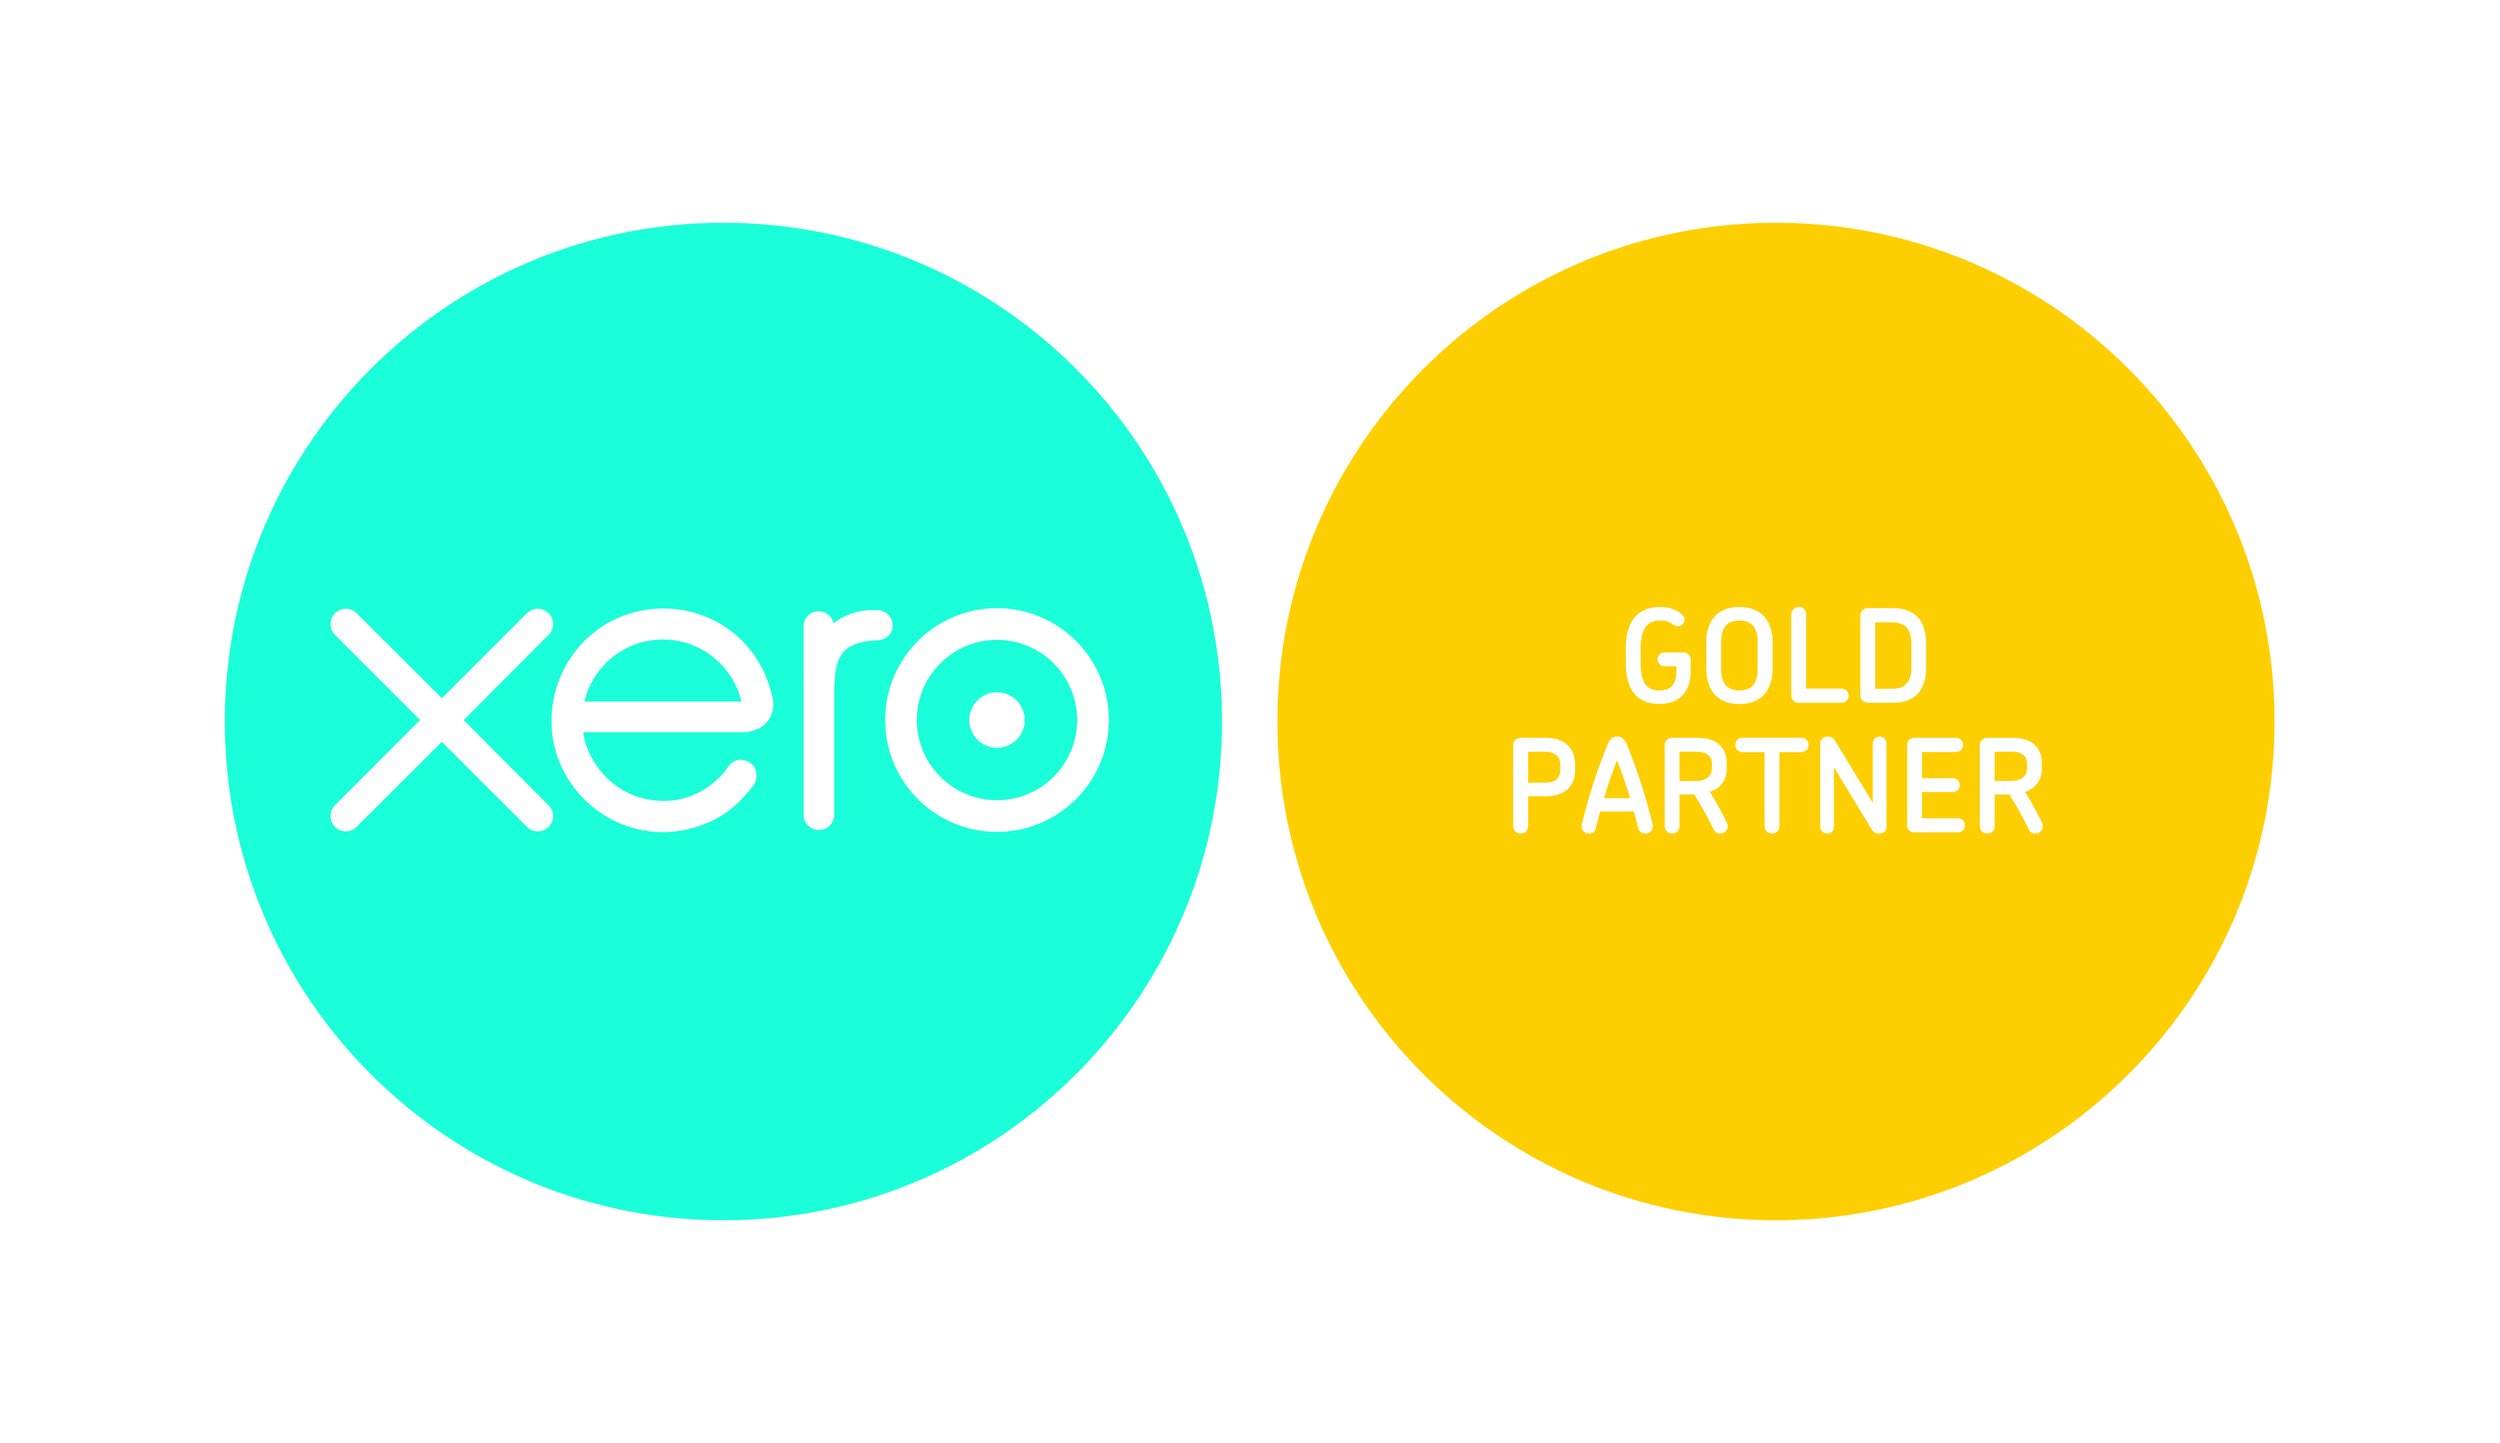 xero-gold-partner-badge-CMYK.jpg